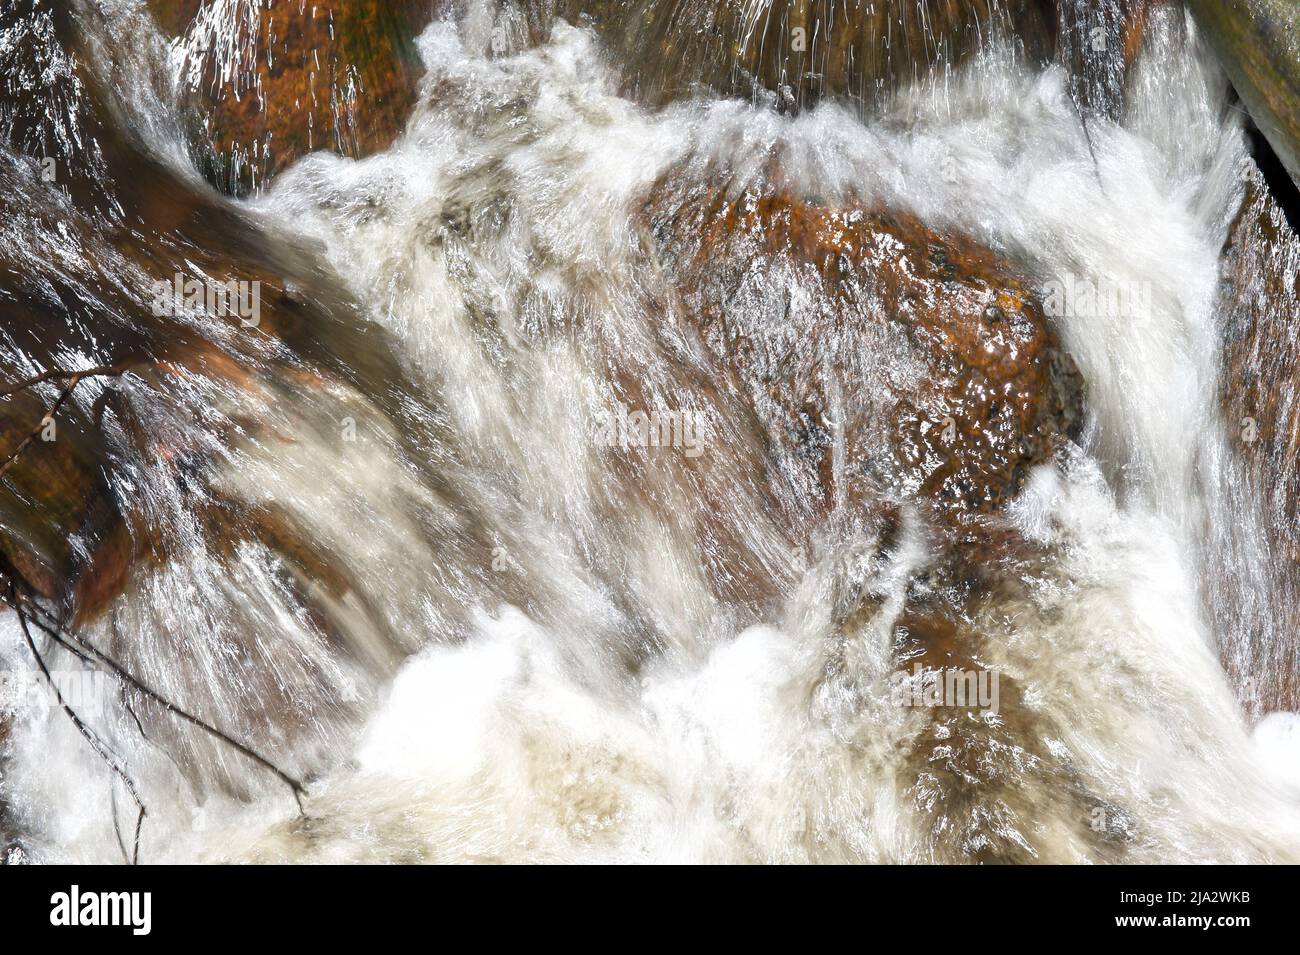 Il caos delle acque bianche sul fiume Murrundindi nella Toolangi state Forest a Victoria, Australia. Le Cascate di Murrundindi erano in piena alluvione. Foto Stock